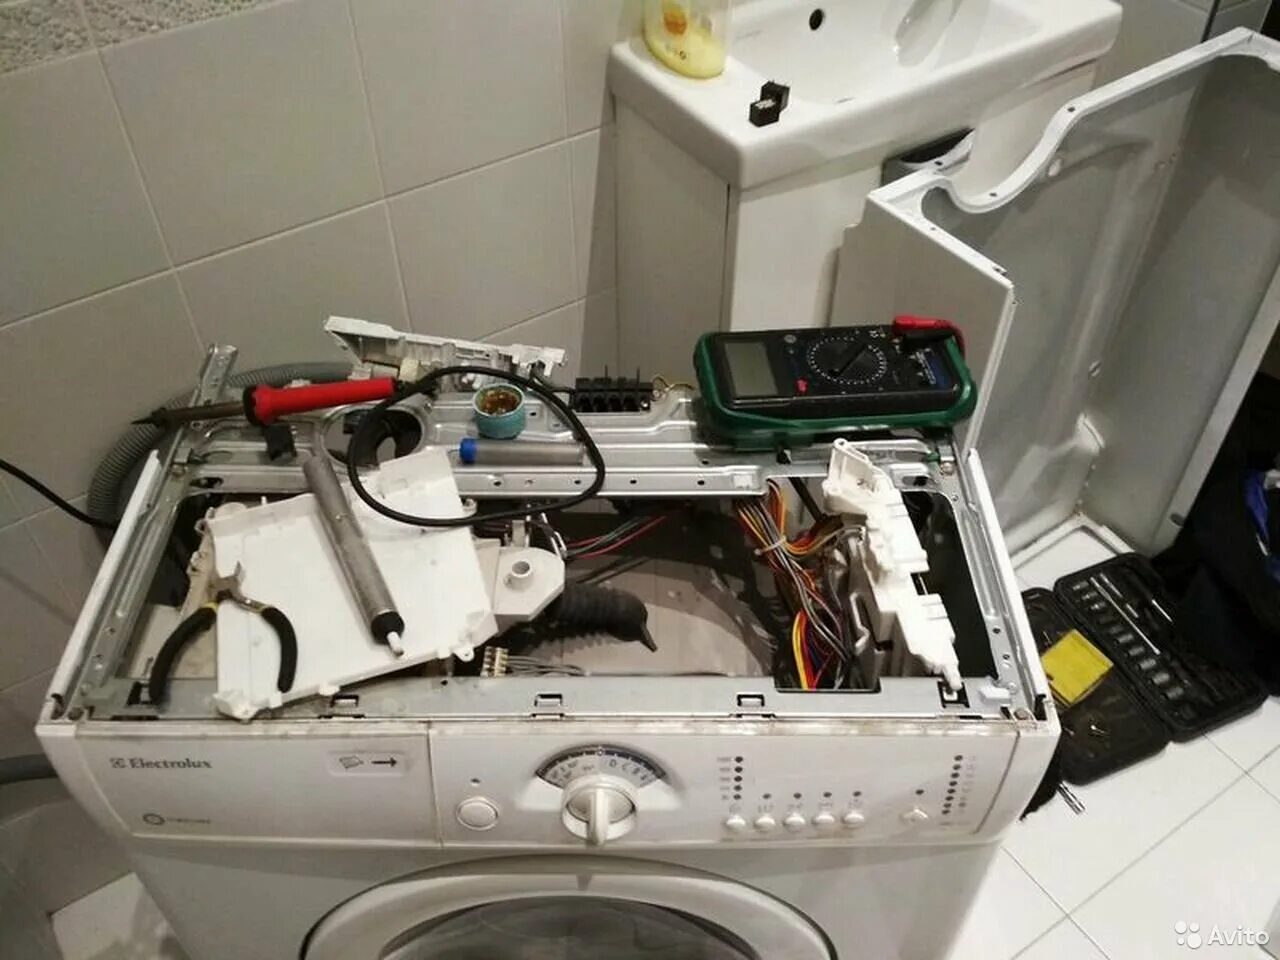 Ремкомплект стиральной машинки. Разобранная стиральная машина. Ремонт стиральных машин. Сломалась стиральная машина. Мастер по ремонту посудомоечных машин.